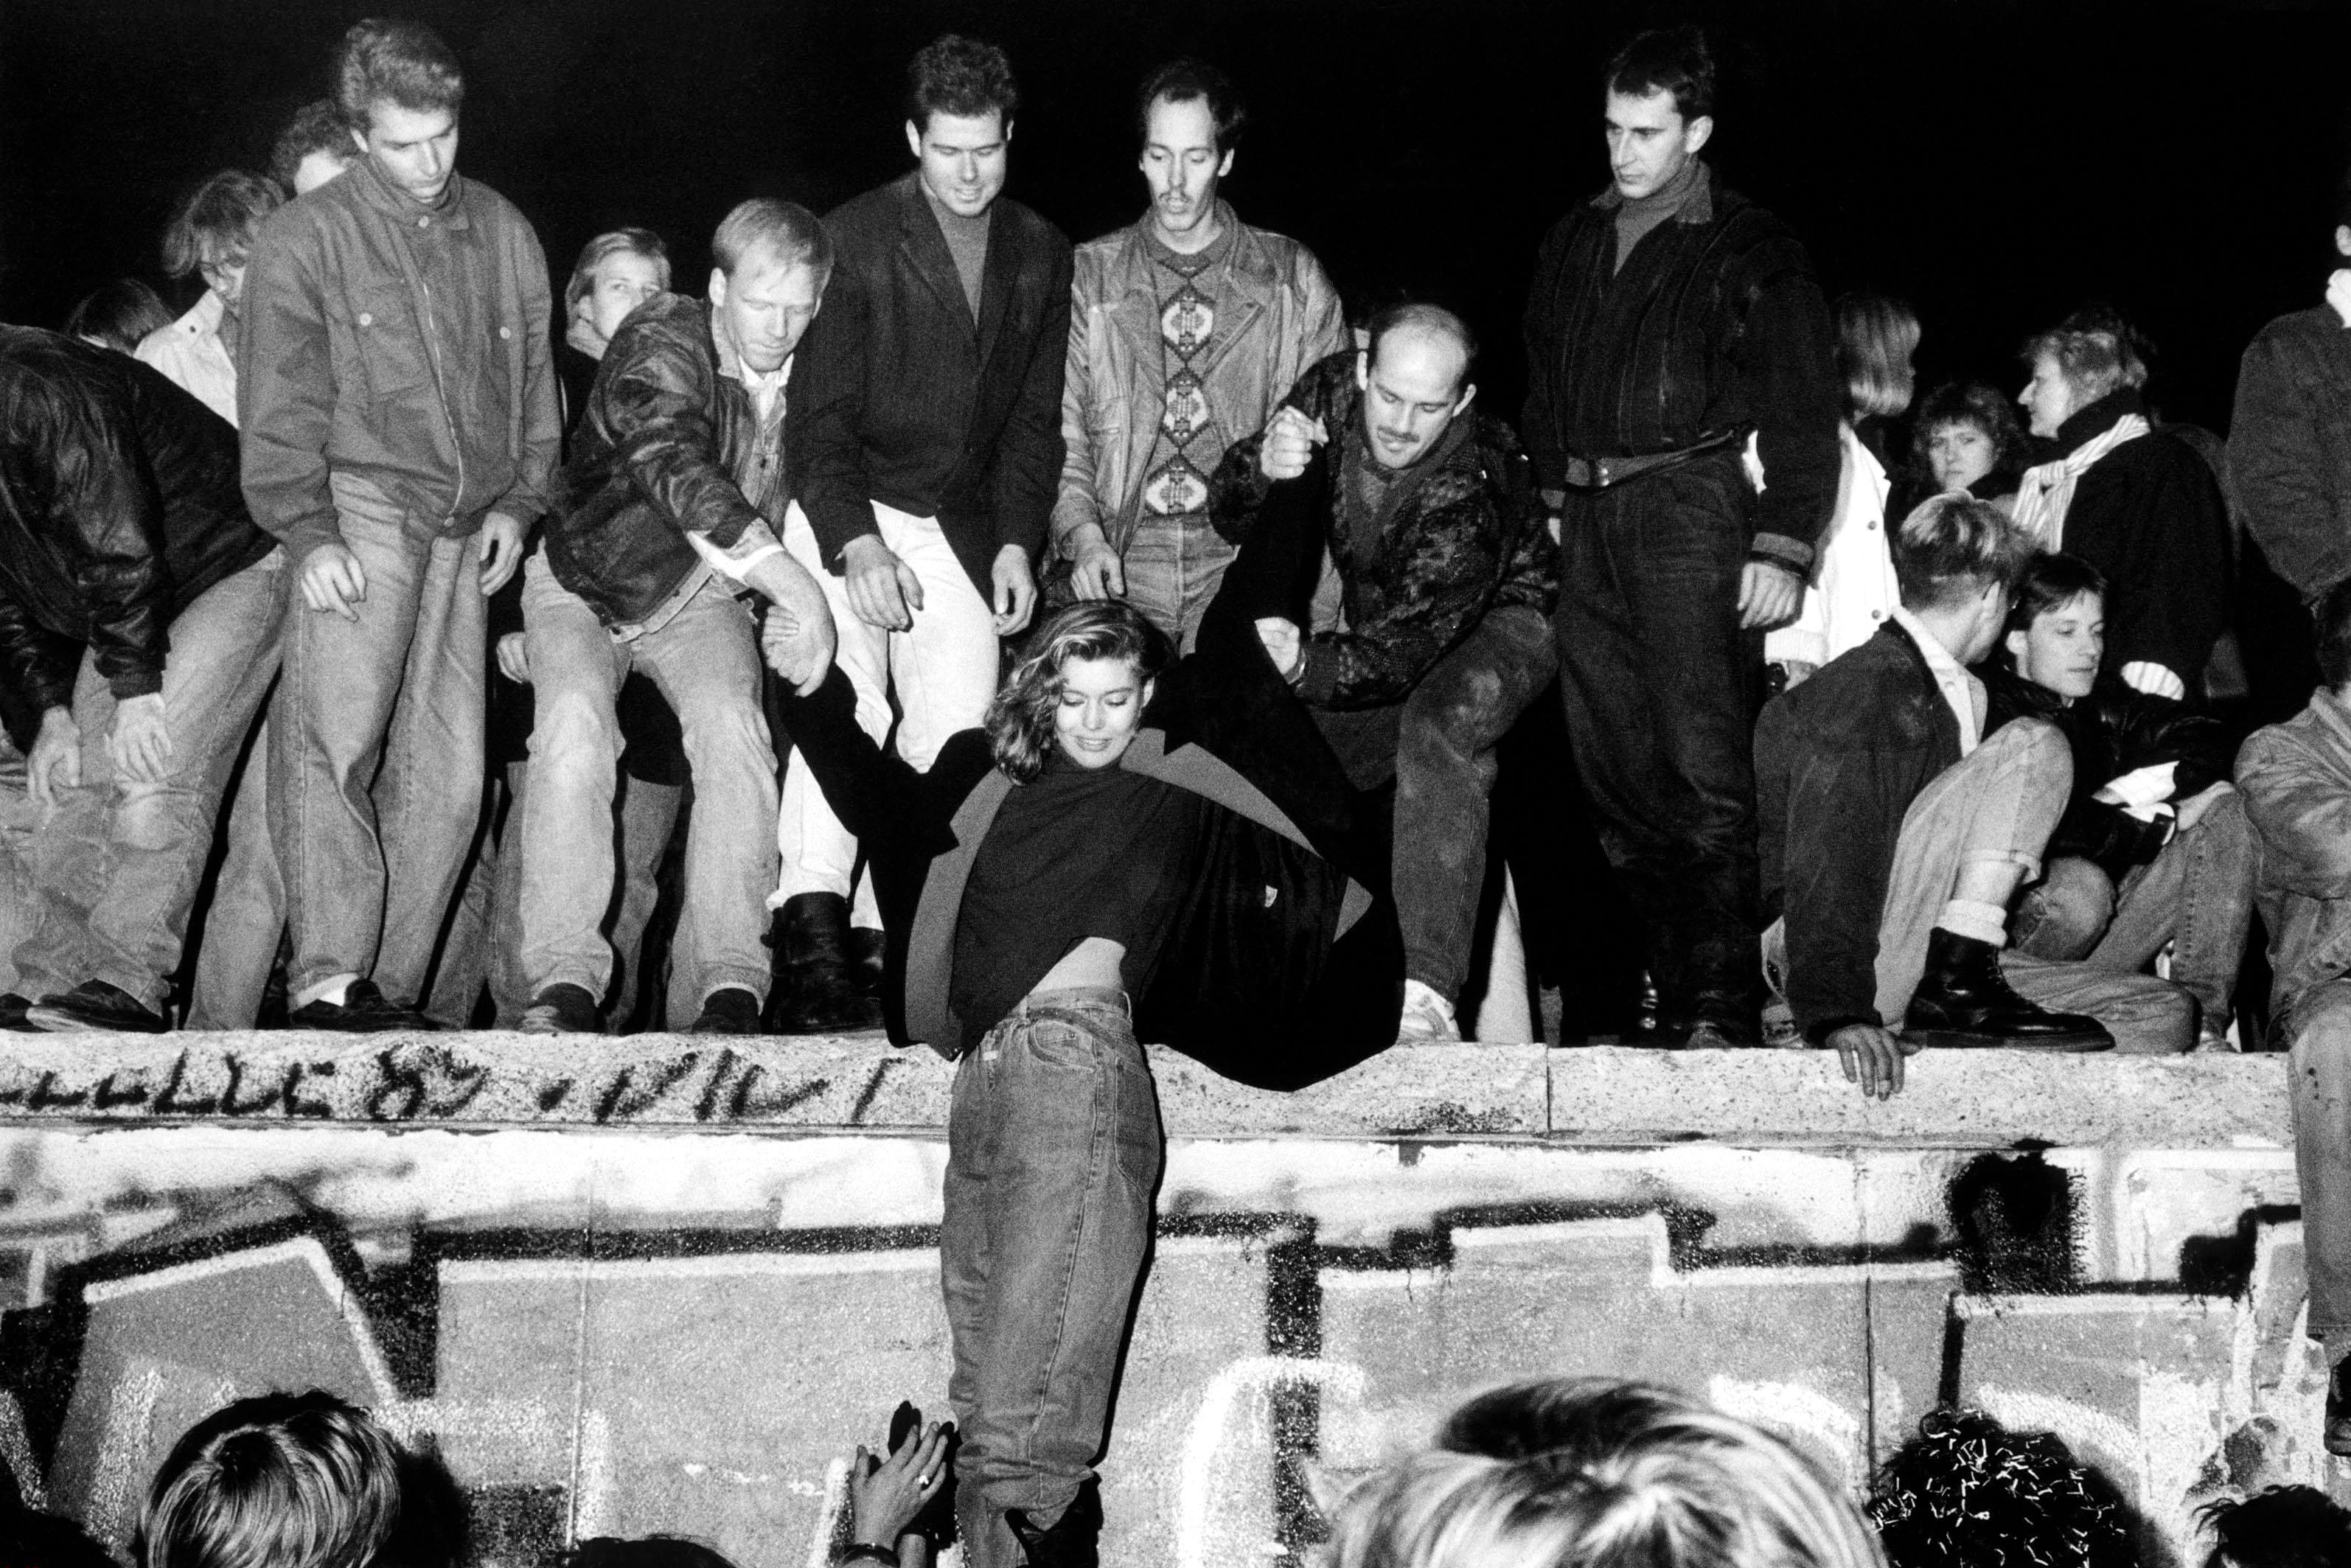 Il 9 novembre 1989, dopo una conferenza stampa in cui i vertici politici della Germania Est dichiarano l’apertura immediata del confine con Berlino Ovest, improvvisamente decine di migliaia di berlinesi si precipitano in strada e le guardie di confine, che non hanno ordini a riguardo, sono costrette ad aprire i check point, avviando un vero e proprio esodo